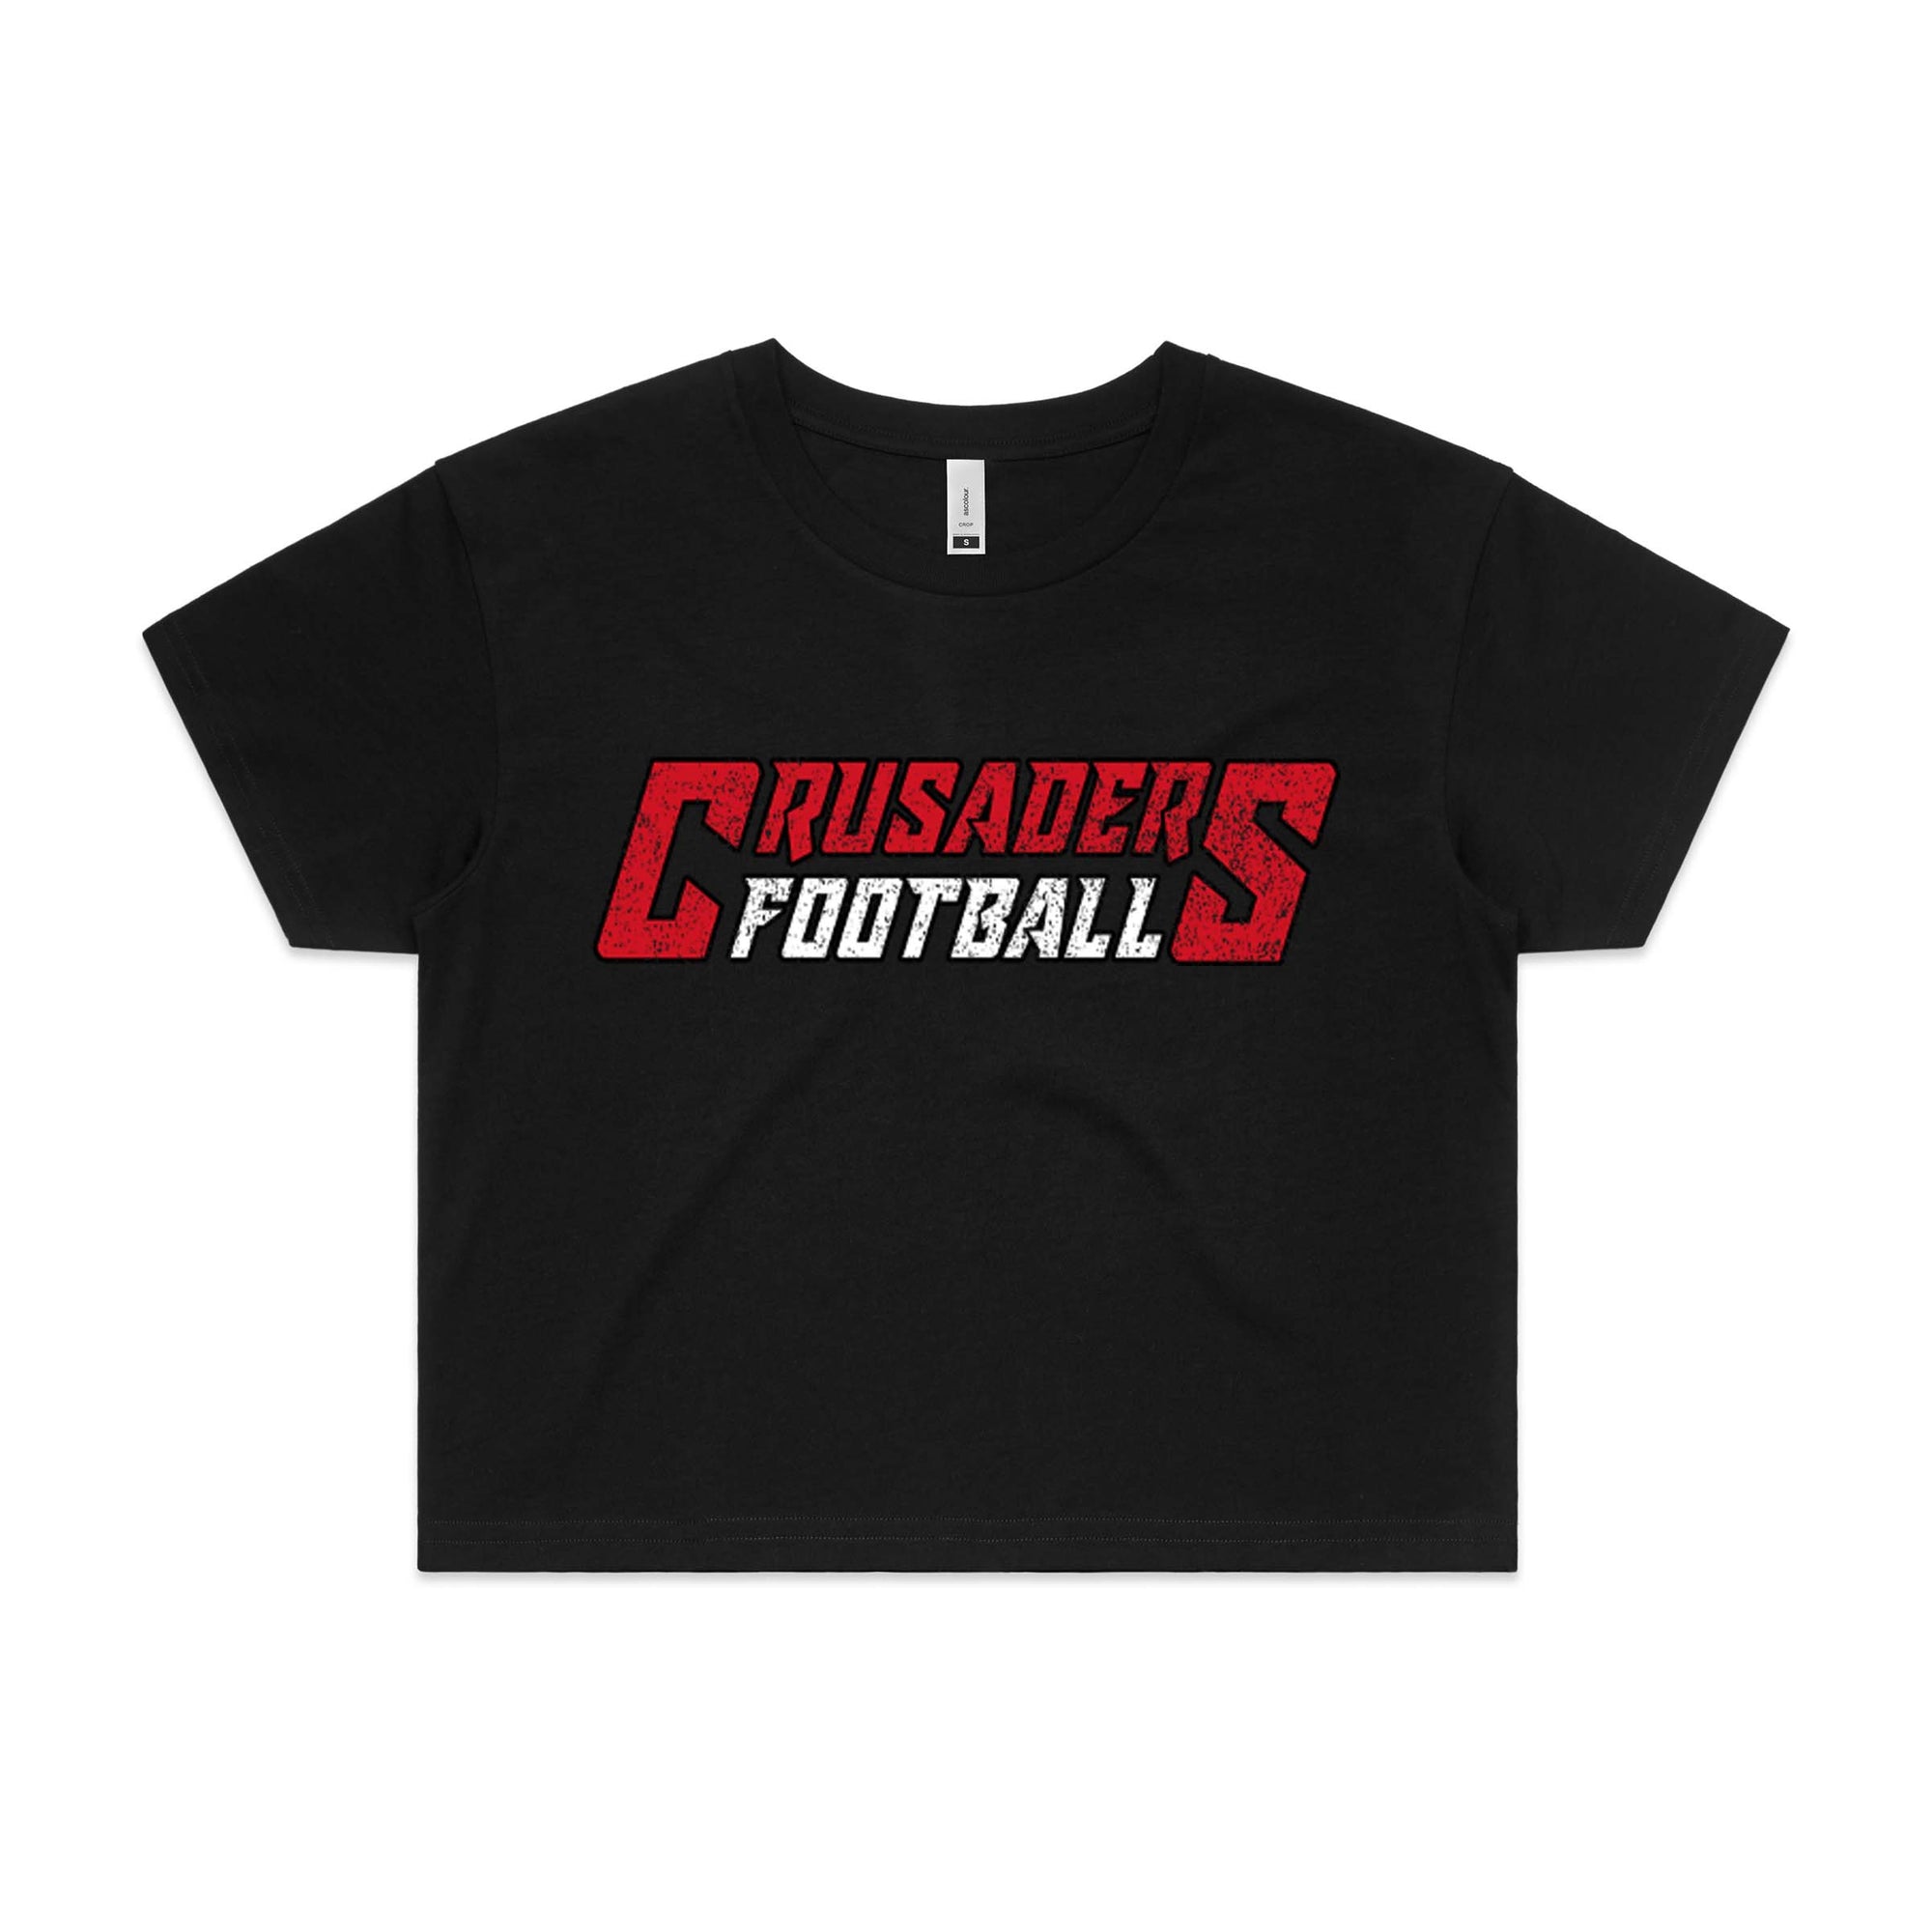 Crusaders Football Logo Cropped T-shirt